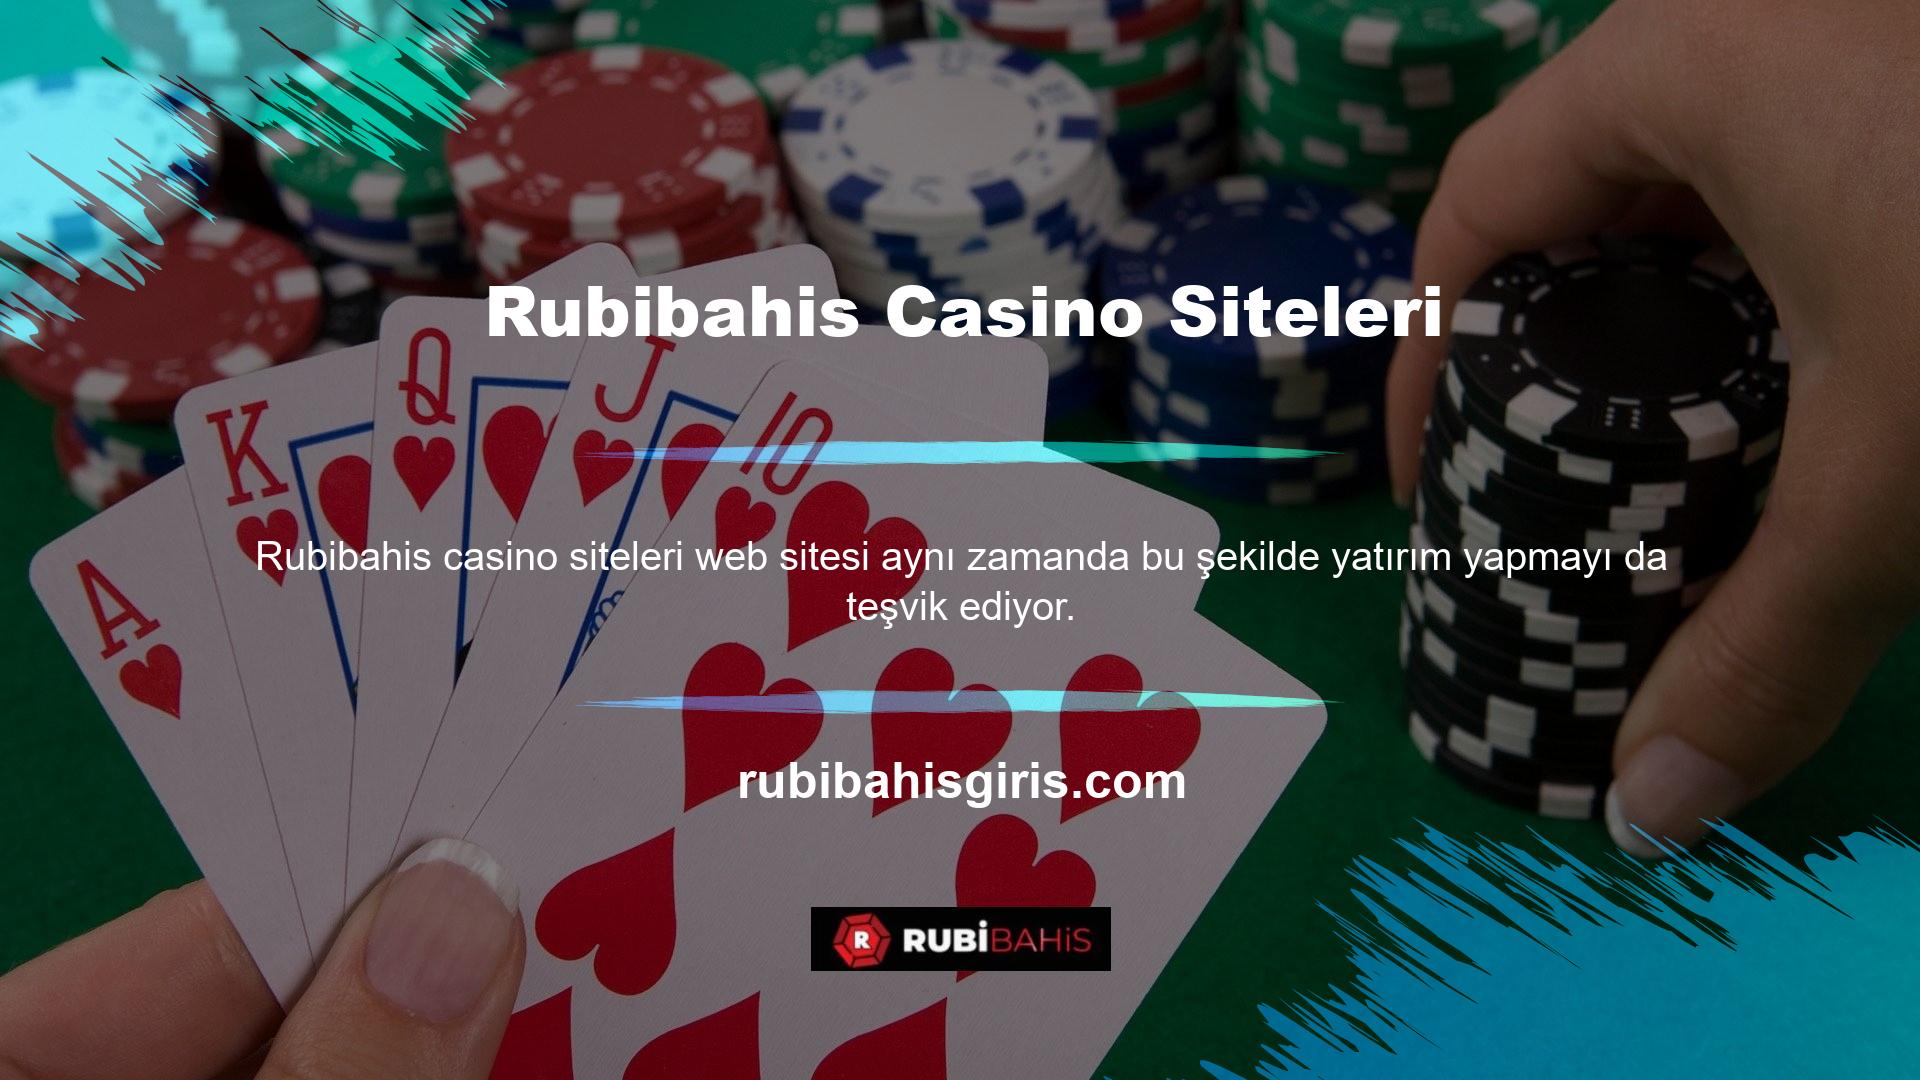 Bu çevrimiçi casino sitesi ve platformu, çeşitli yatırım fırsatları için güvenilir ve kaliteli bir seçenektir